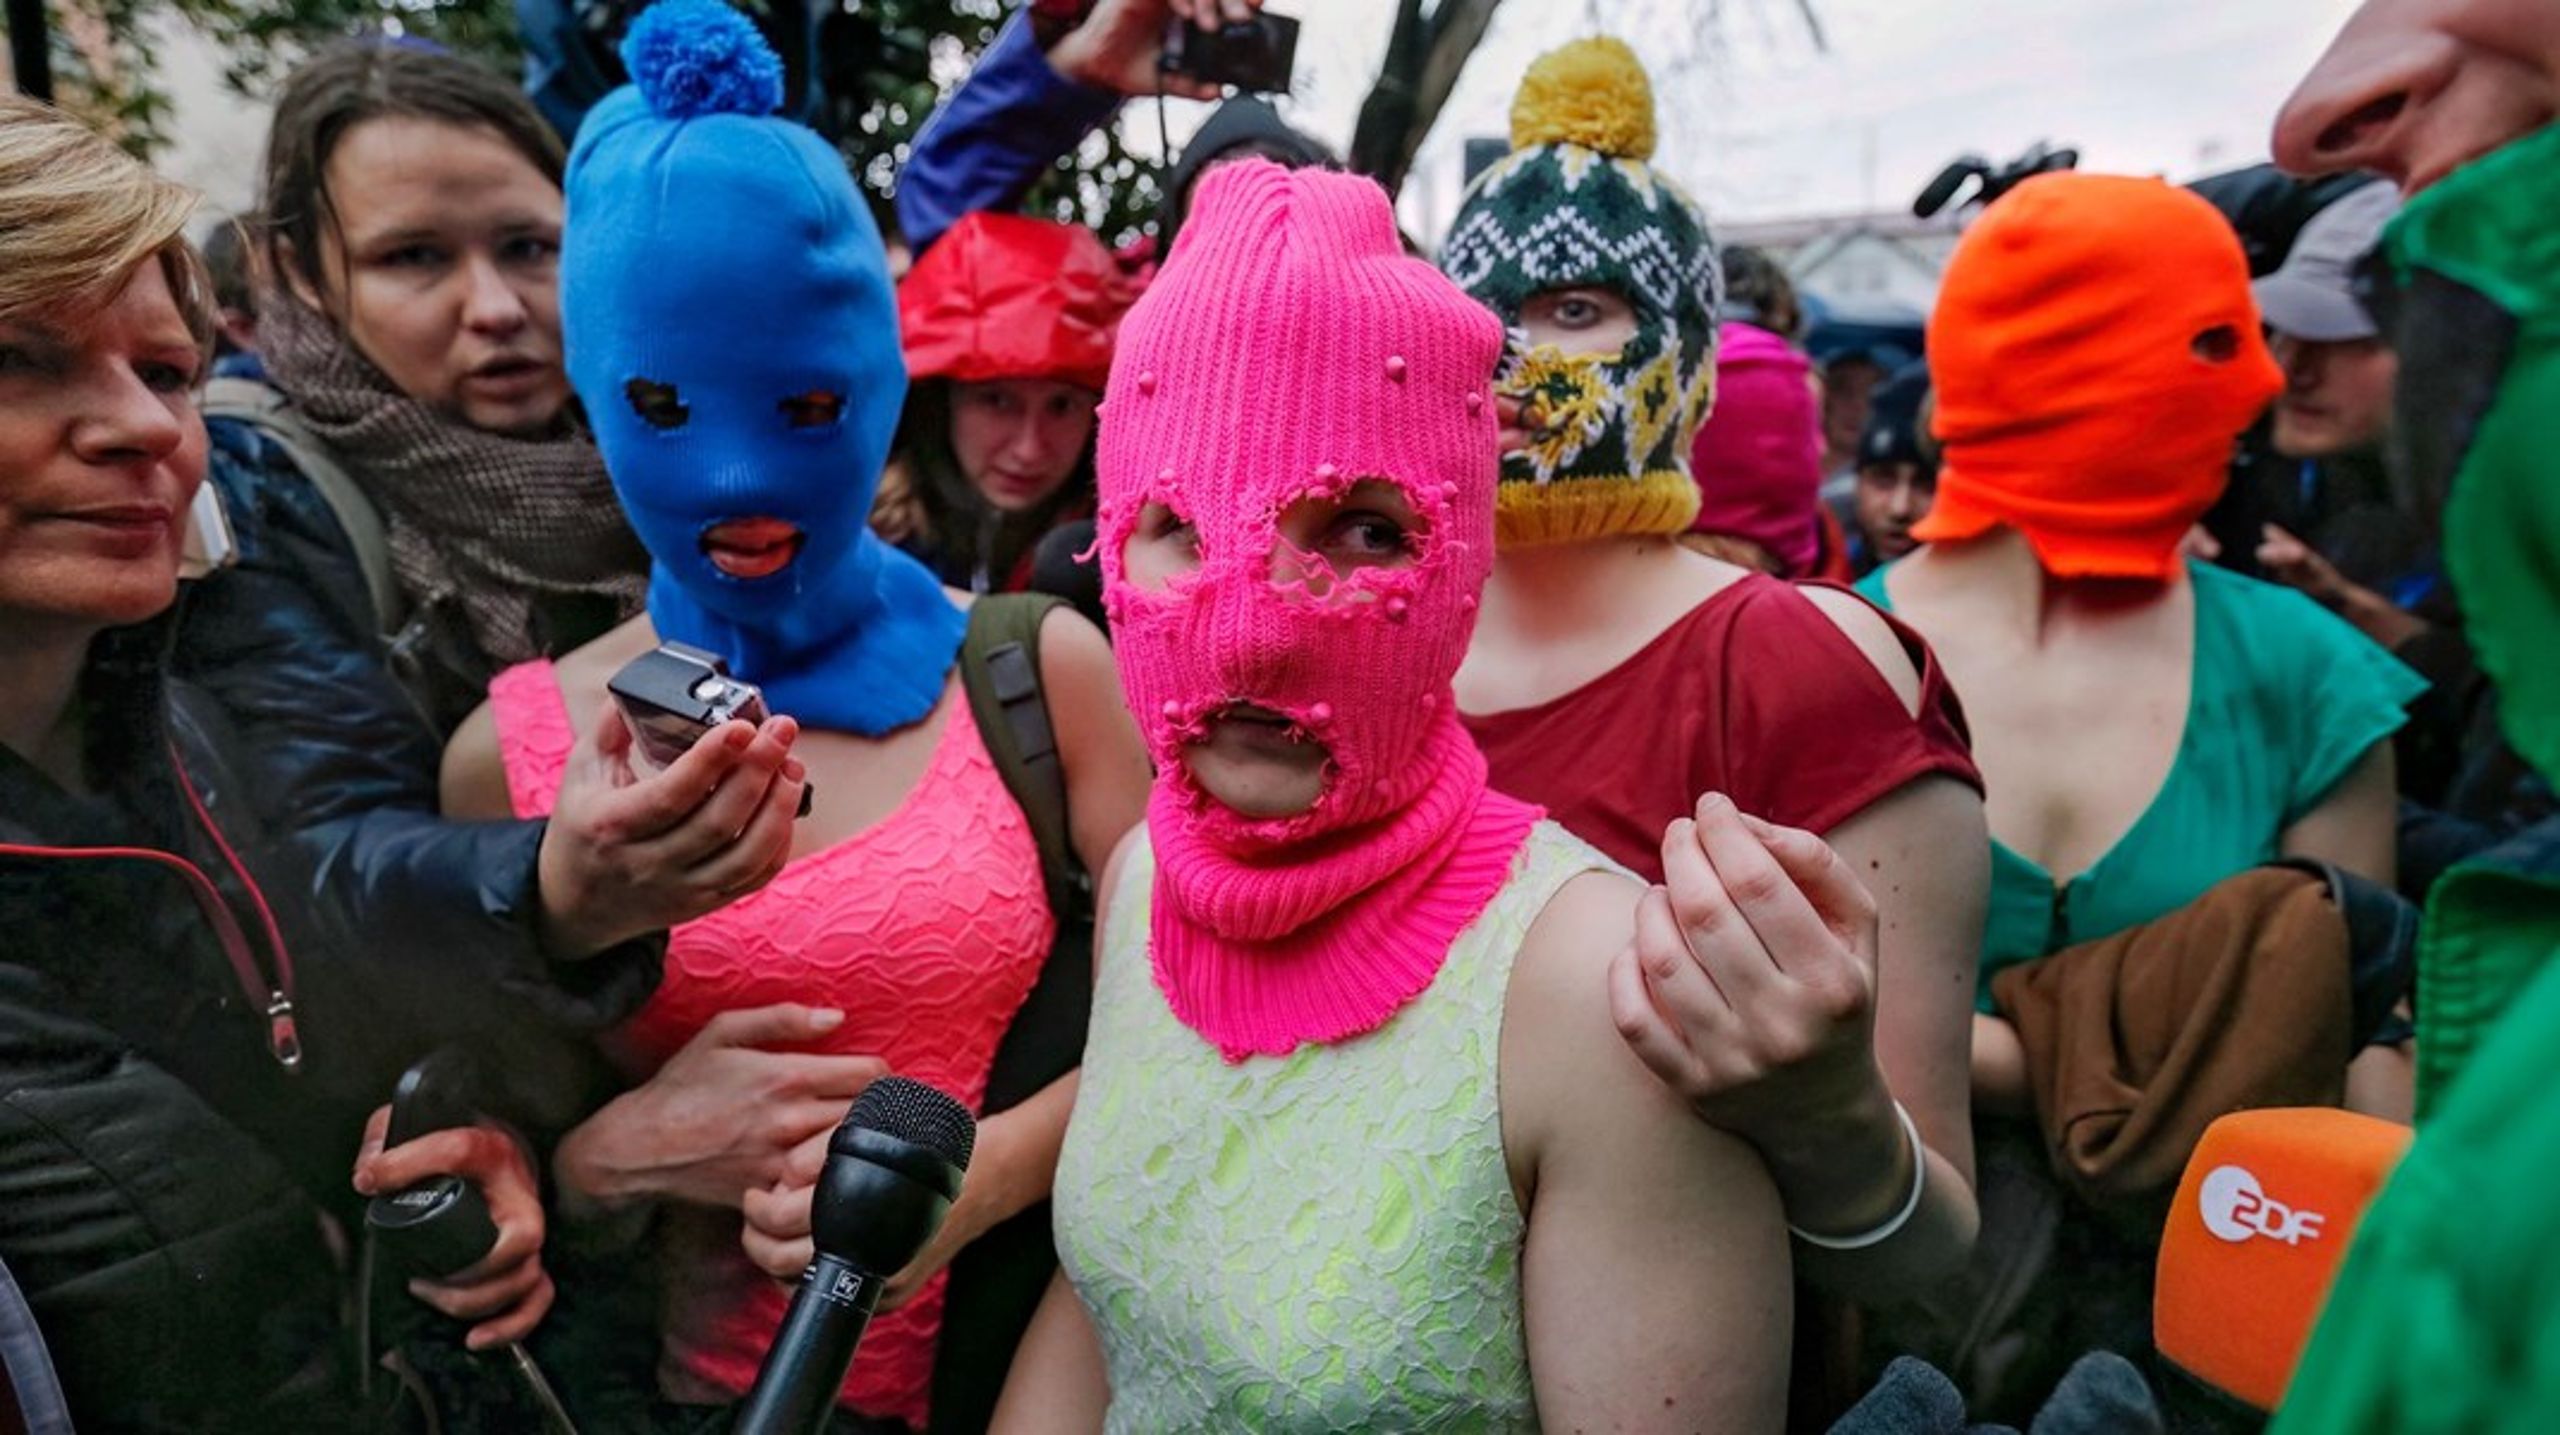 Pussy Riot er blevet kendt for deres&nbsp;aktioner,
der ofte opstår pludseligt i det offentlige rum, hvor de iført farvestrålende
tøj og forklædninger udfordrer lov og orden med deres protestsange og slogans.&nbsp;